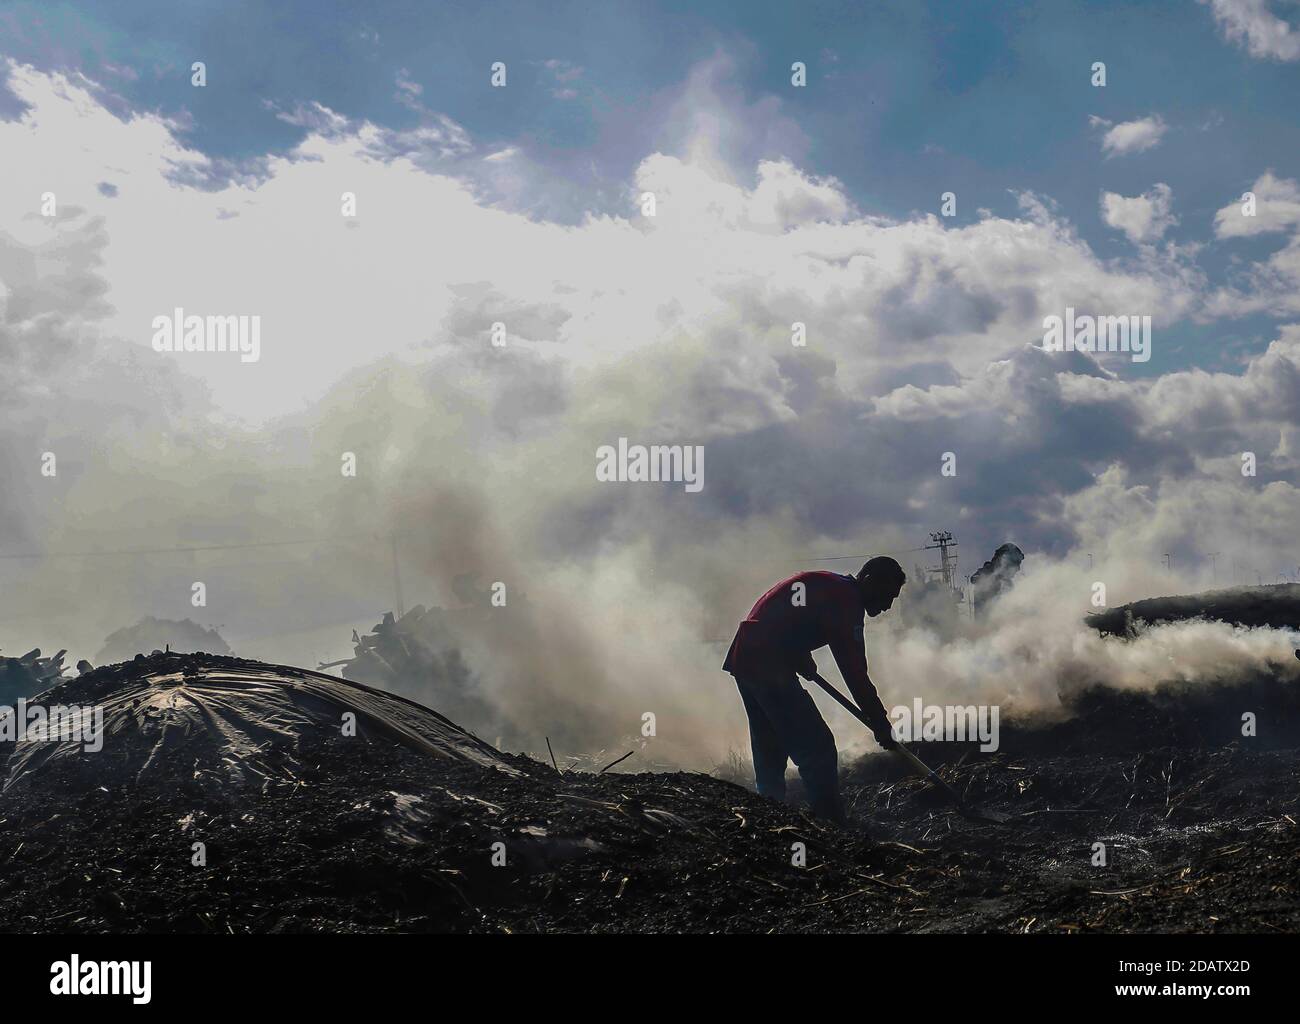 Un ouvrier du charbon palestinien jette du sable à l'installation de production d'Al-Hattab, à l'est du camp de réfugiés de Jabalia, au nord de la ville de Gaza. L'installation de charbon de Habash est le plus grand producteur de la bande de Gaza. Sept hommes travaillent tout au long de l'année, en particulier pendant l'hiver et les vacances où la demande de charbon est élevée. Tandis que les travailleurs réduisent différents types d'arbres, le bois de chauffage est couramment utilisé pour fabriquer du charbon de bois. Le citrus est très bénéfique et le plus cher, mais les travailleurs de habash ne l'installent pas sur ce type seulement sur lui et traitent des variétés disponibles telles que certains Kenya ou des olives. Après la récolte du Banque D'Images